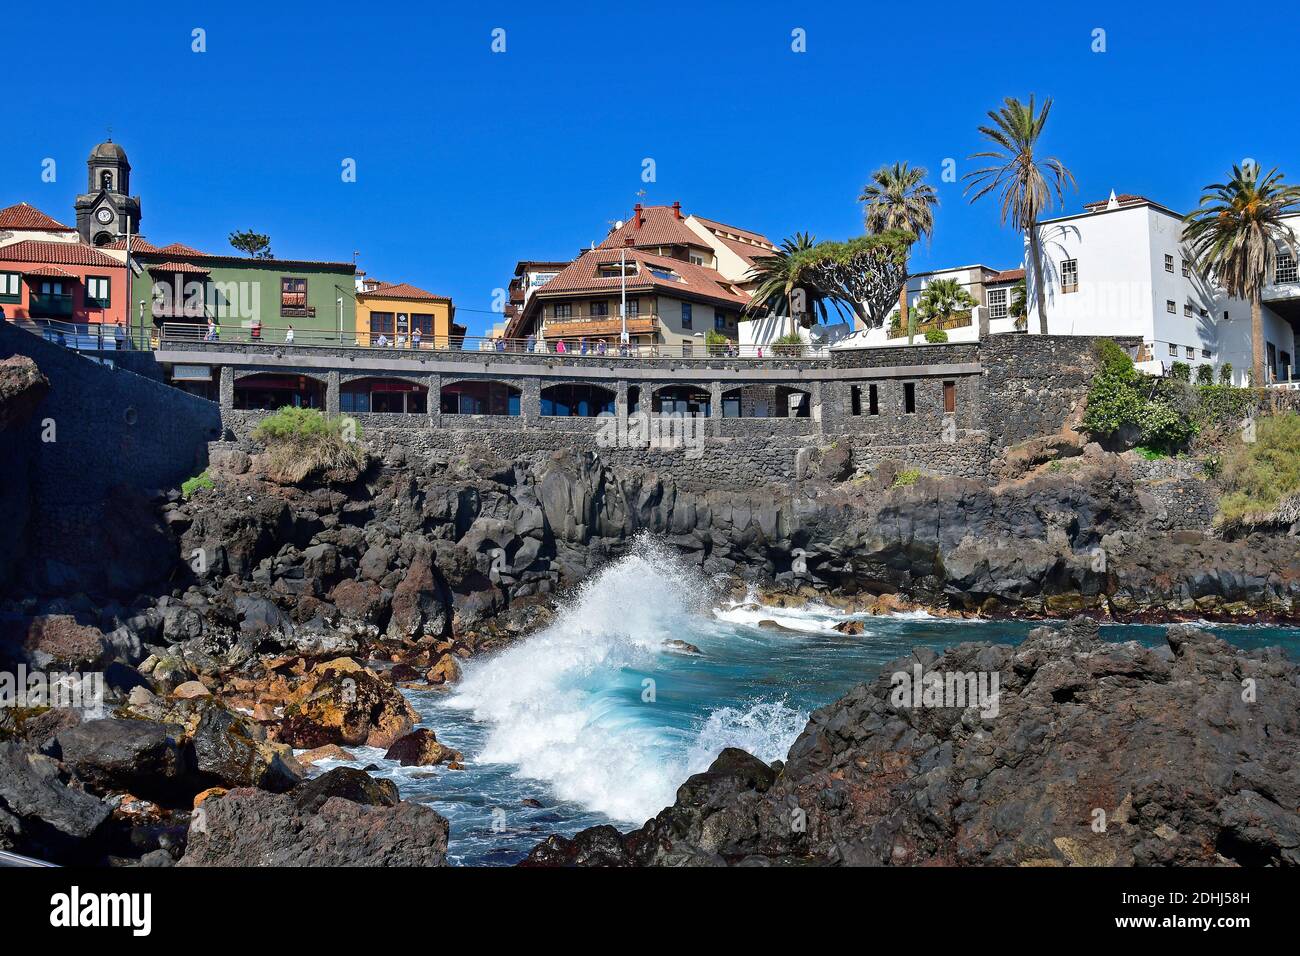 Ténérife, Îles Canaries, Espagne - 03 avril 2018: Personnes non identifiées à Punte del Viento à Puerto de la Cruz, un endroit privilégié en bord de mer, tour de ch Banque D'Images